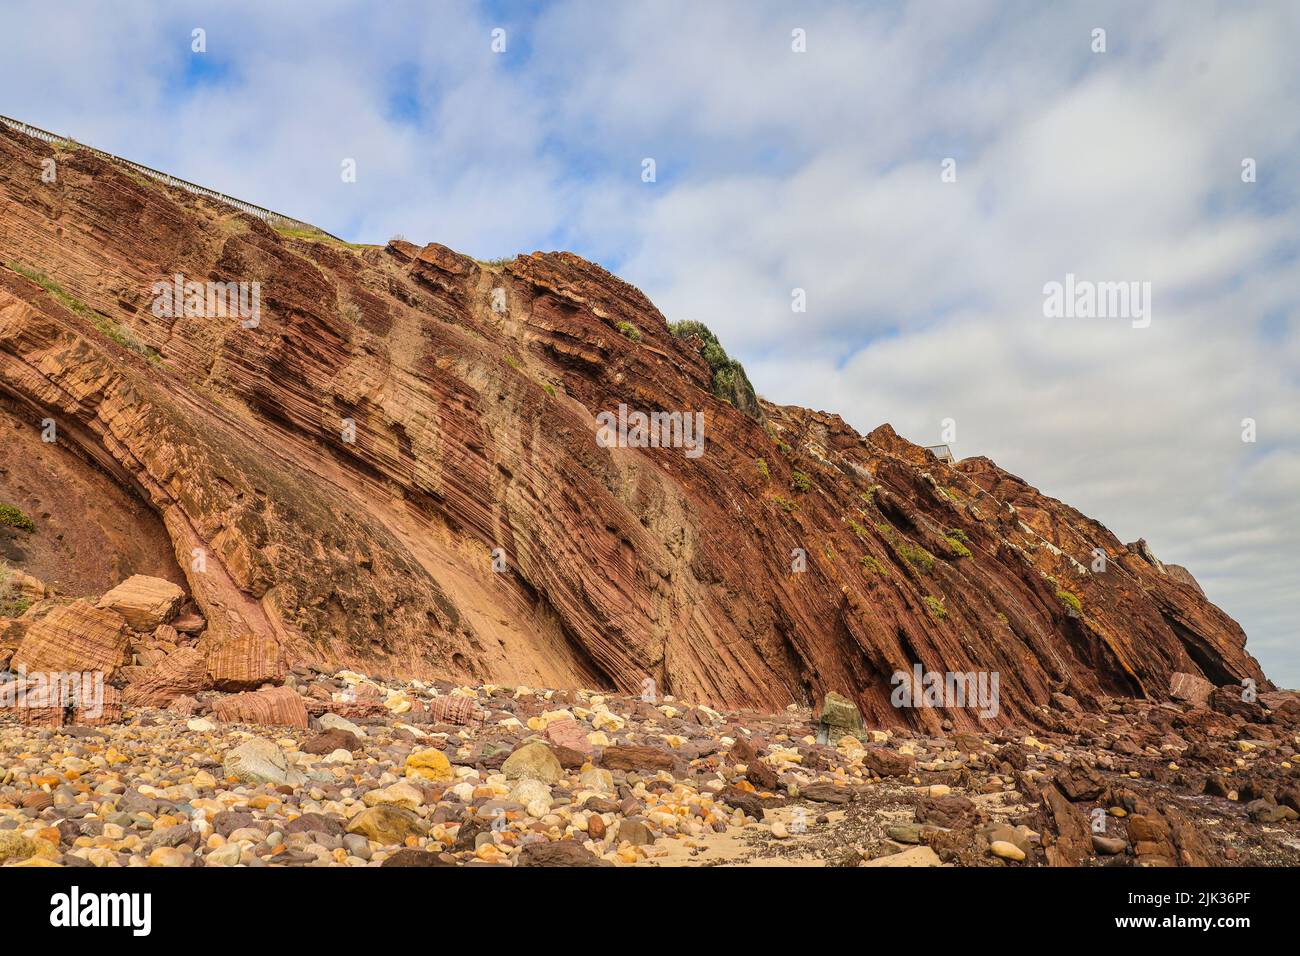 Incroyable formation de roches glaciaires à Hallet Cove, en Australie méridionale Banque D'Images